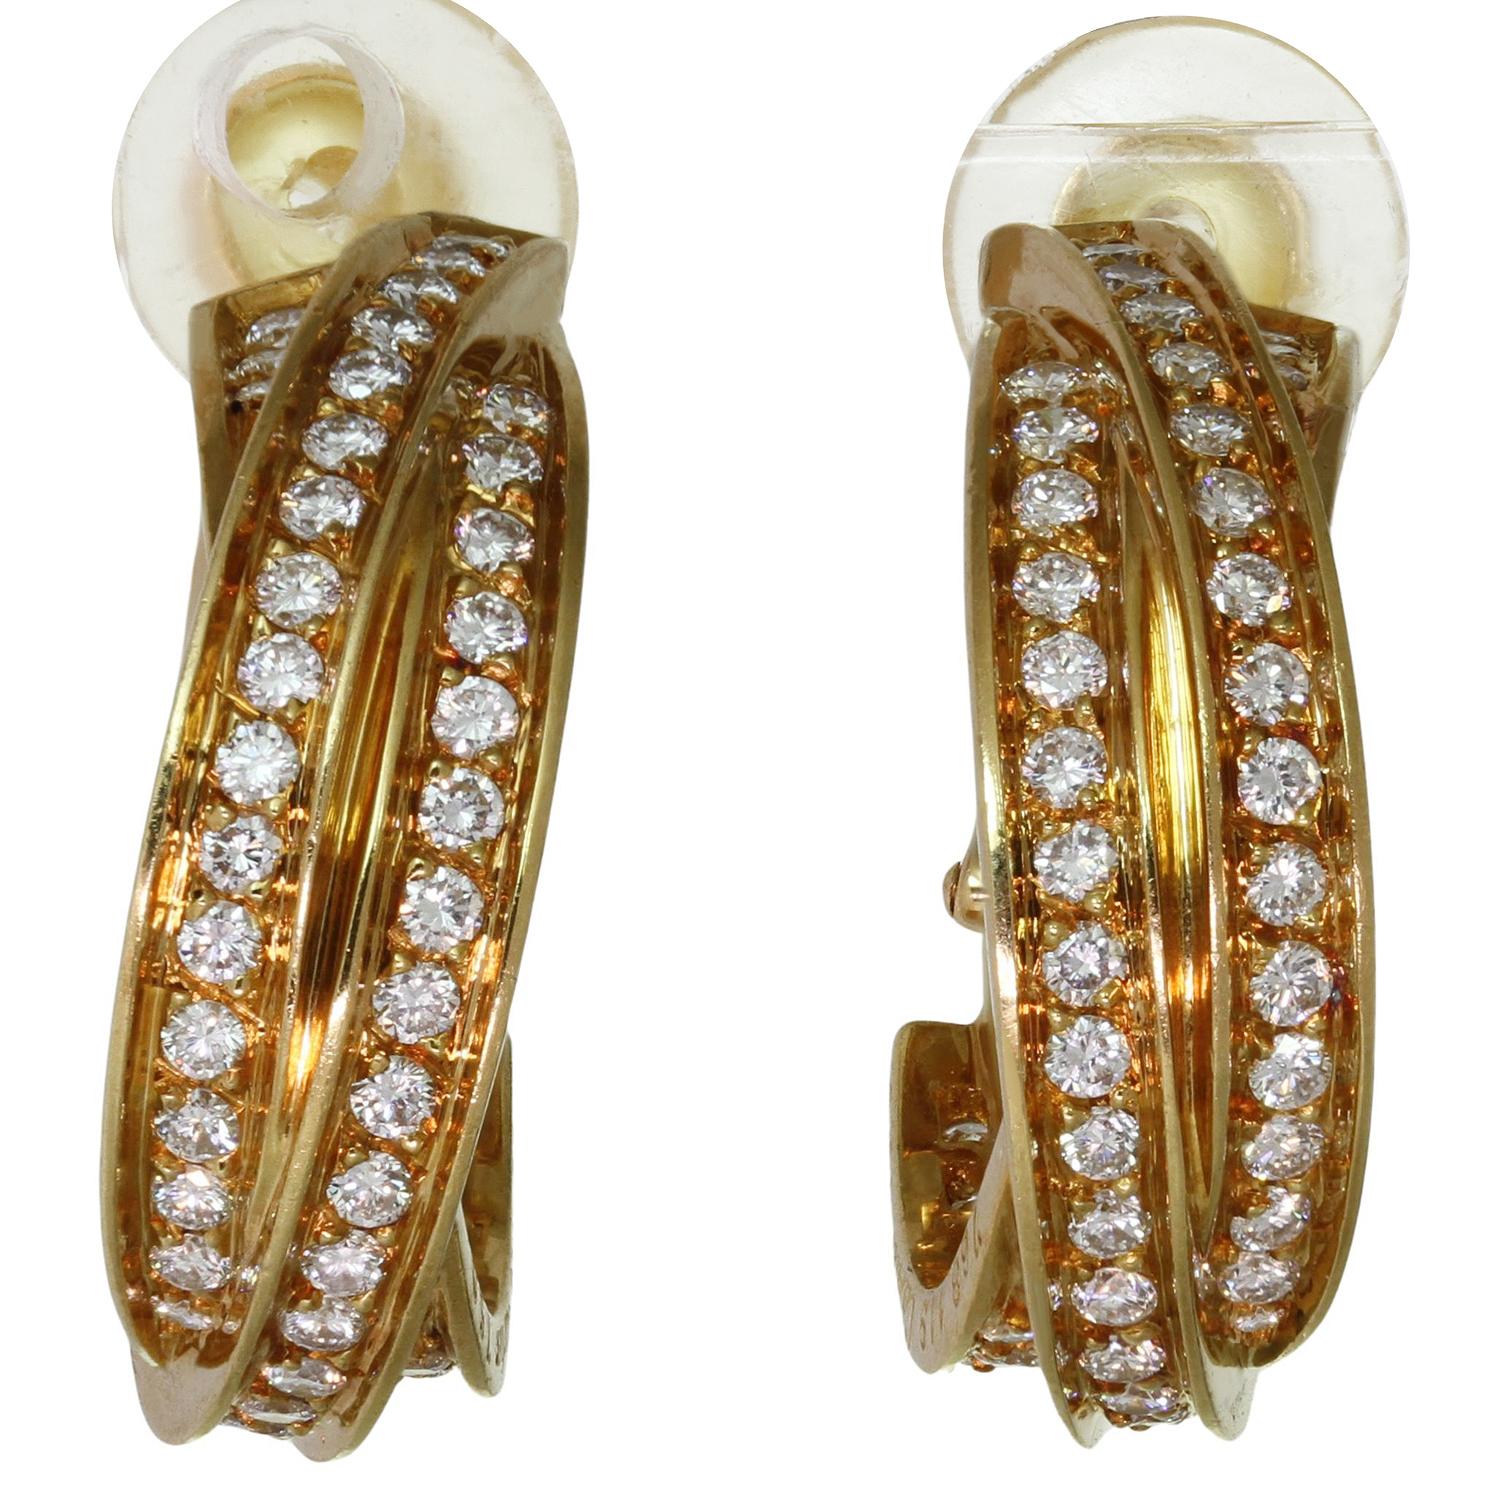 Diese atemberaubenden Cartier-Ohrringe aus der klassischen Kollektion Trinity de Cartier sind in Form eines Bügels mit drei ineinander greifenden Bändern aus 18 Karat Gelbgold gefertigt und mit runden Diamanten im Brillantschliff besetzt.